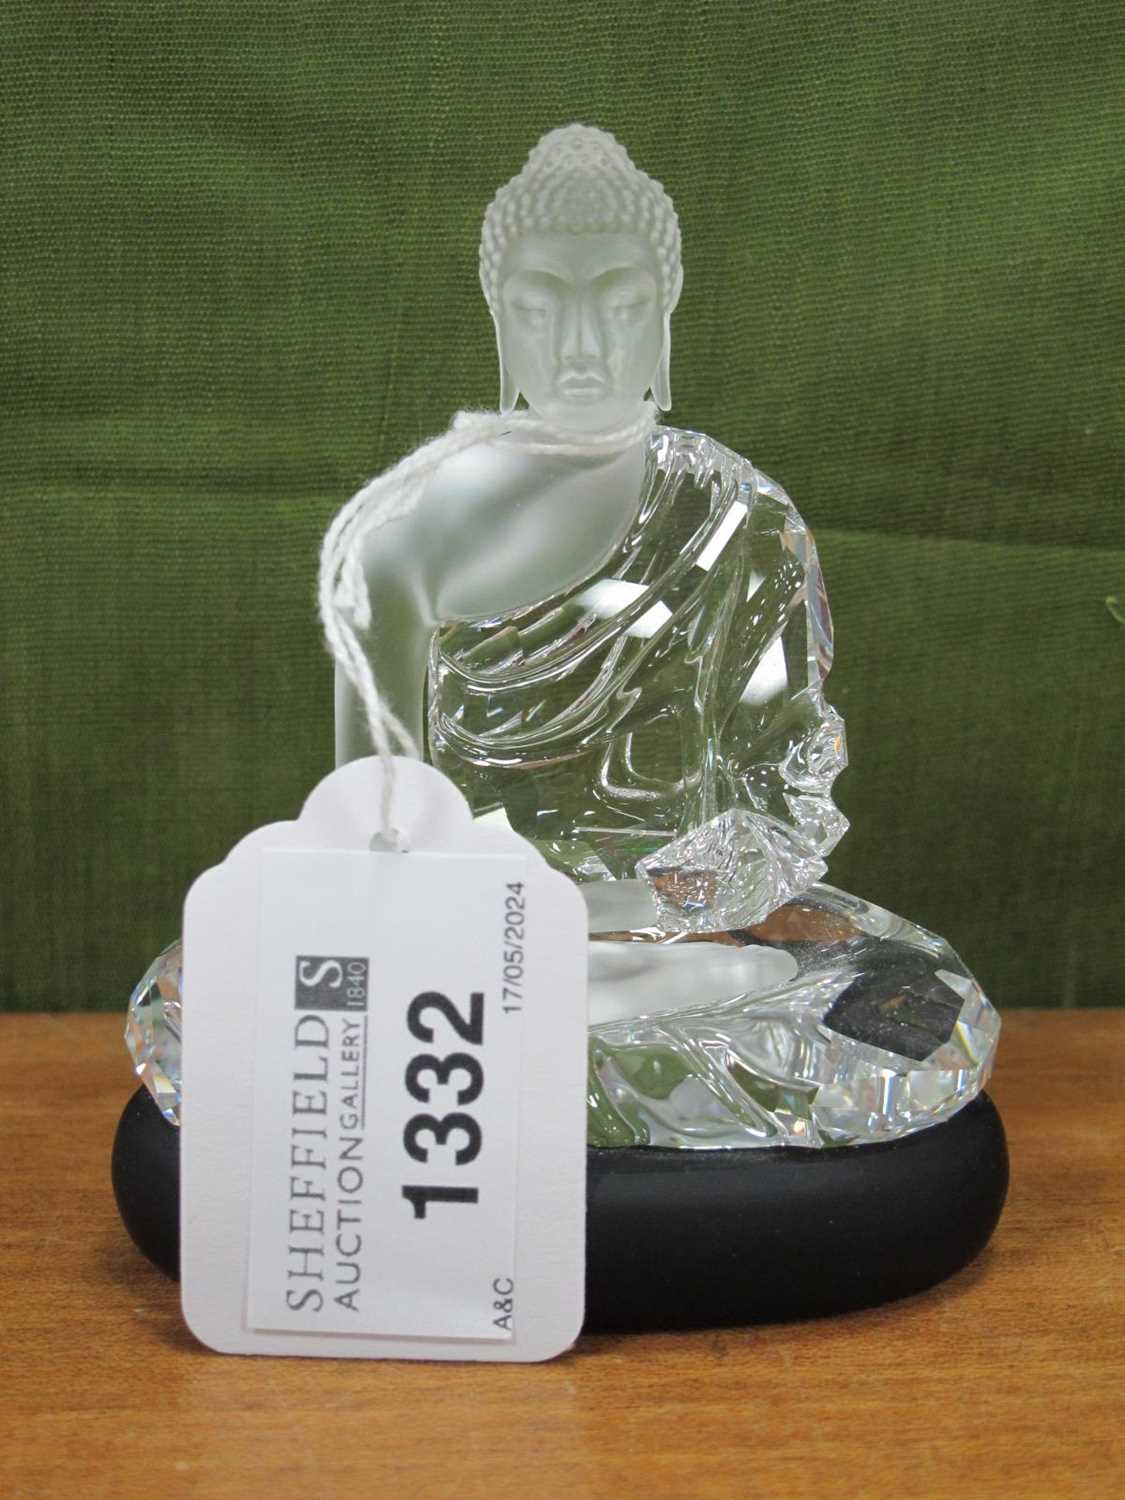 A Swarovski Crystal Model of the Guatama Buddha, sitting on a matt black crystal base, designed by